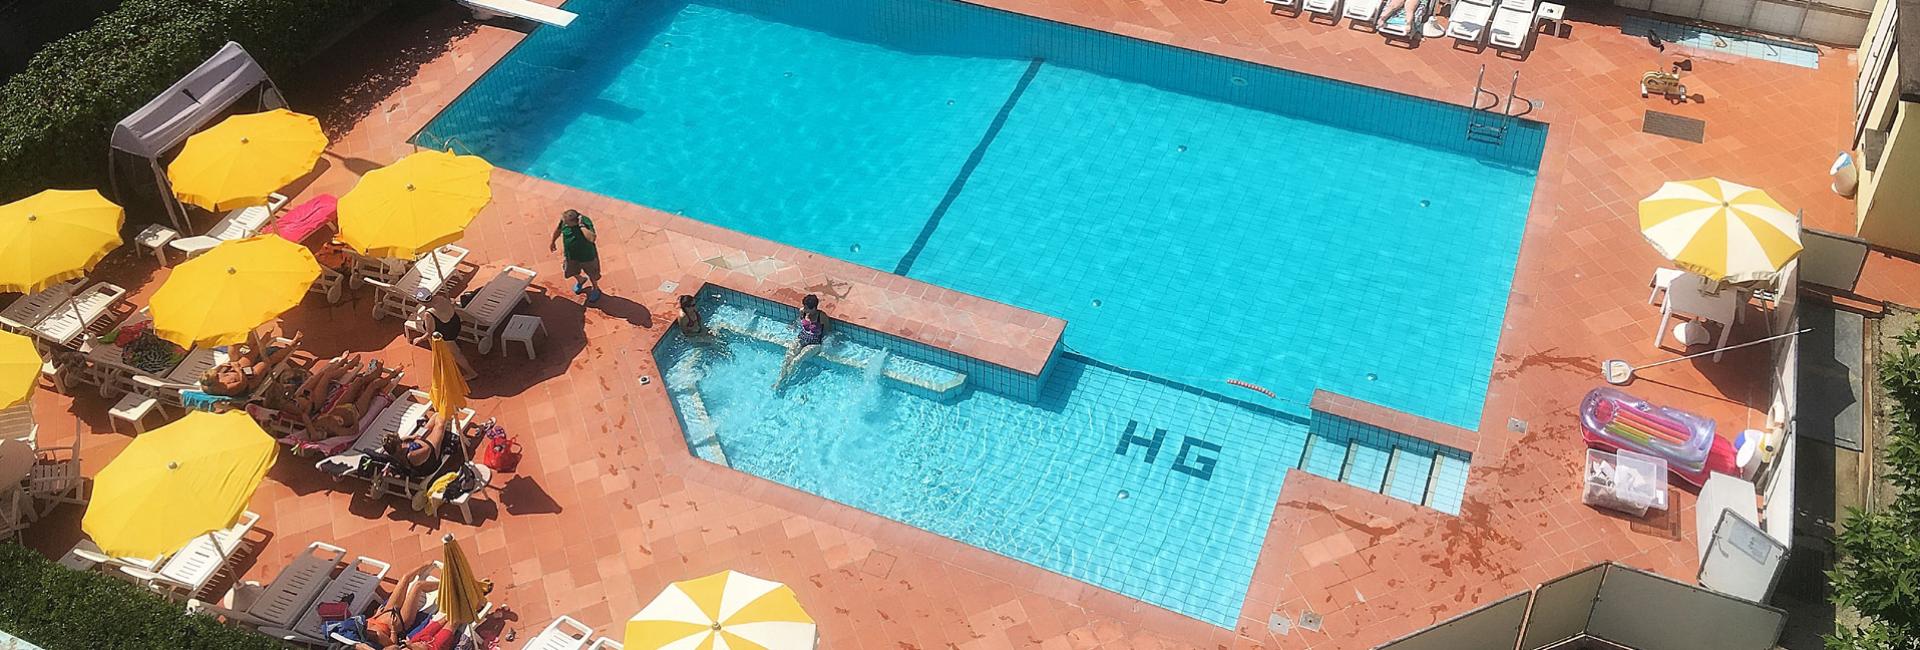 hotelgraziella en swimming-pool 002